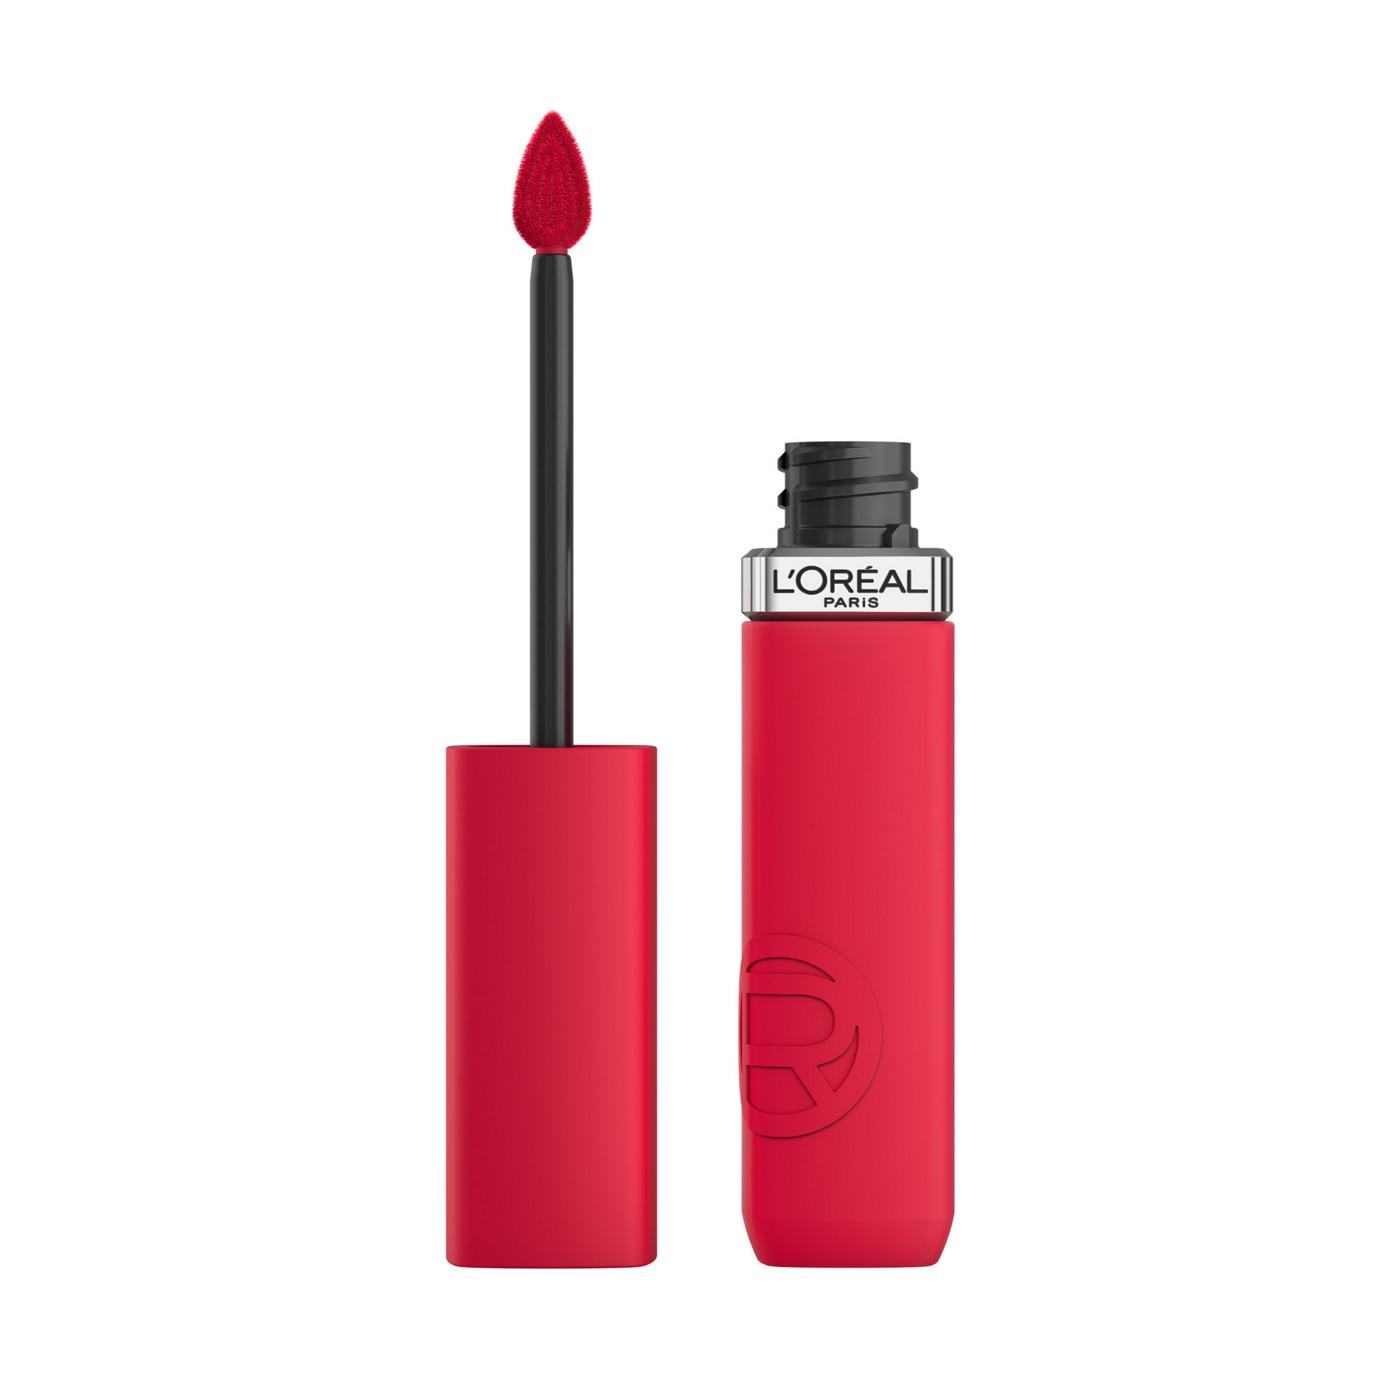 L'Oréal Paris Infallible Le Matte Resistance Liquid Lipstick - French Kiss; image 1 of 6